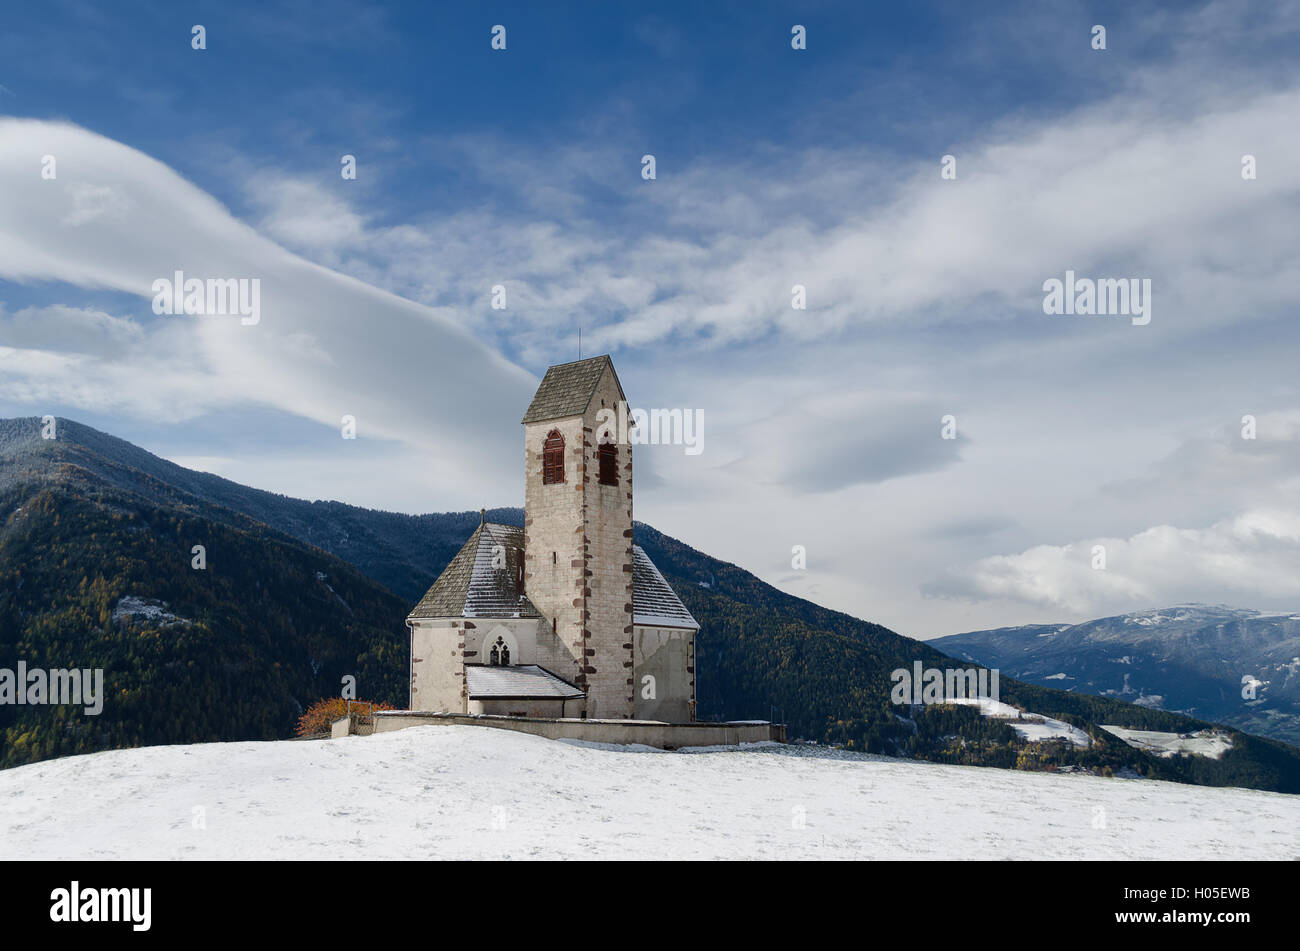 La chiesa di St. Jakob vicino a Santa Maddalena in Villnoesstal (Val di Funes) in Alto Adige in Italia nella neve in inverno. Foto Stock